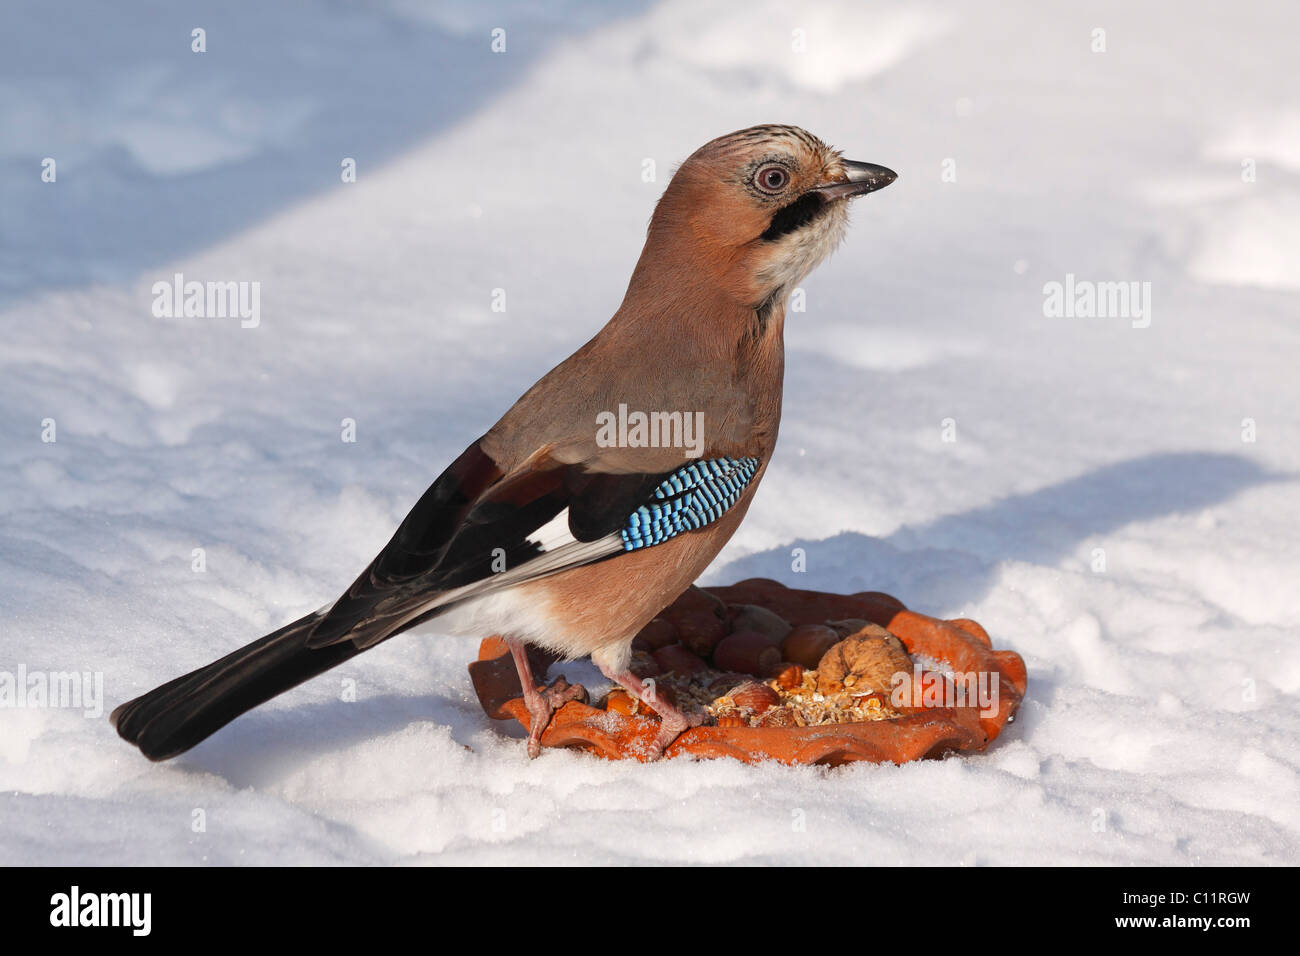 Jay (Garrulus glandarius) alimentation d'un site d'alimentation des oiseaux en hiver dans la neige Banque D'Images